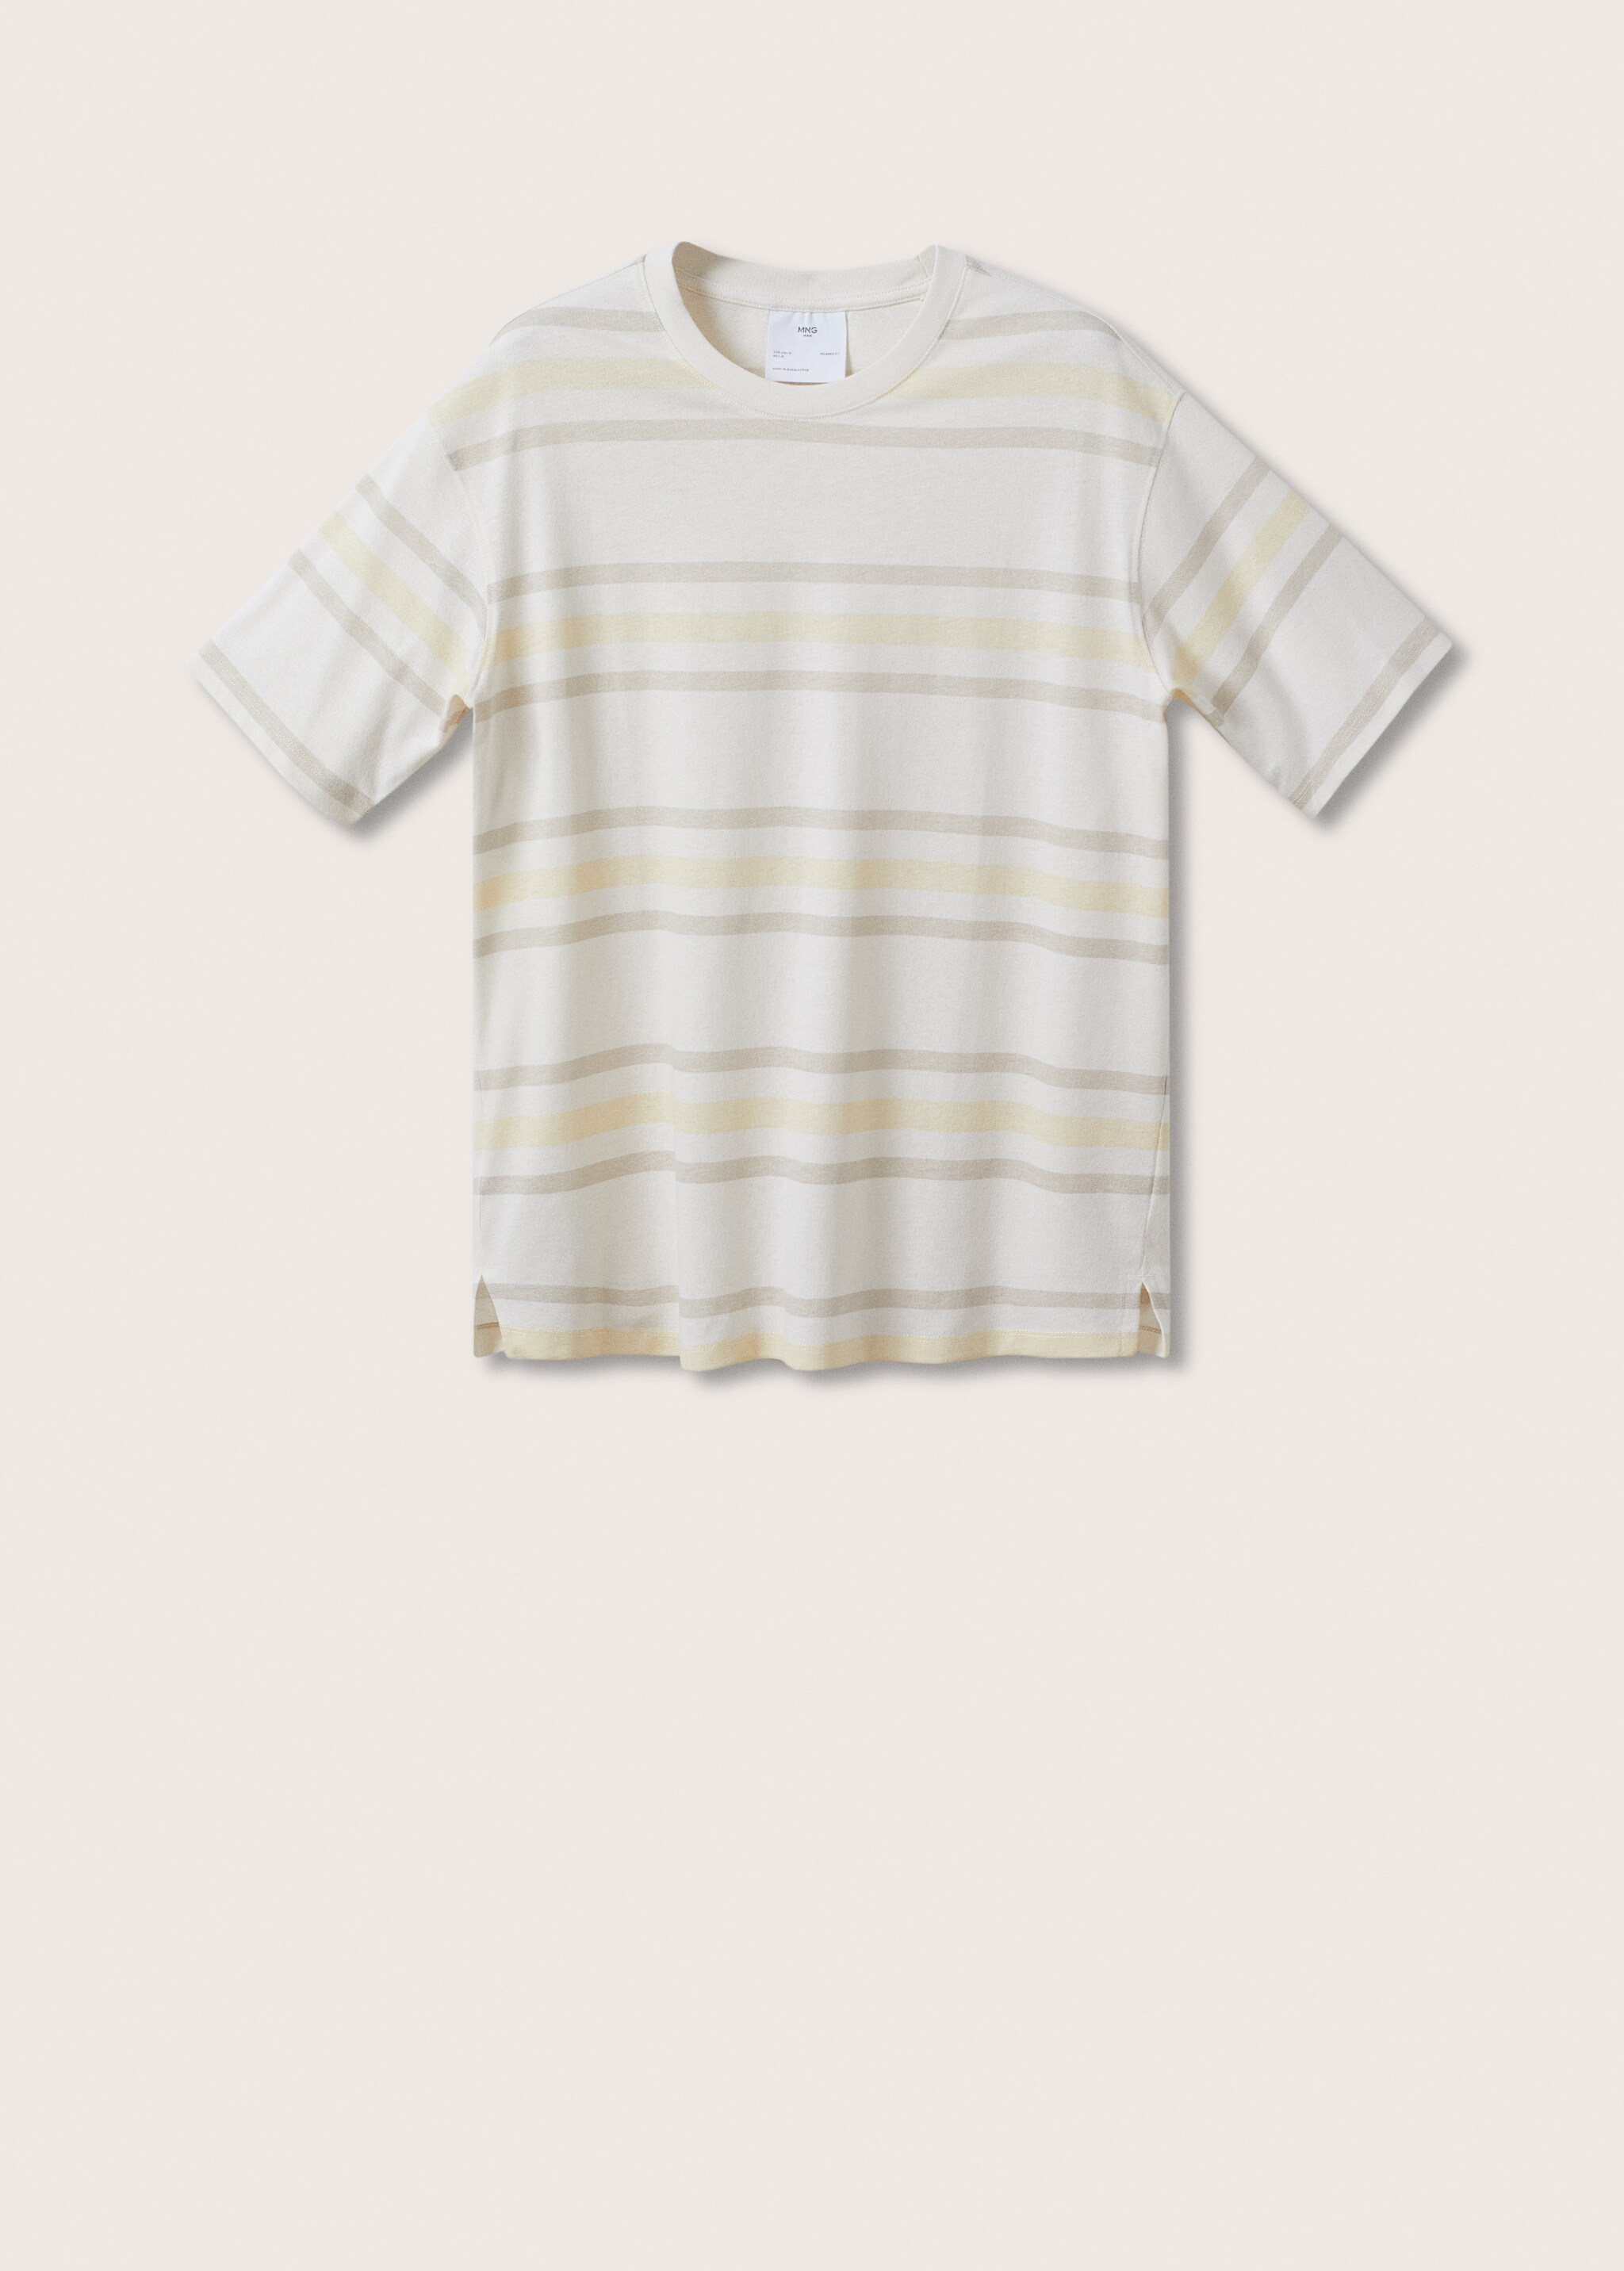 Camiseta algodón lino rayas - Artículo sin modelo